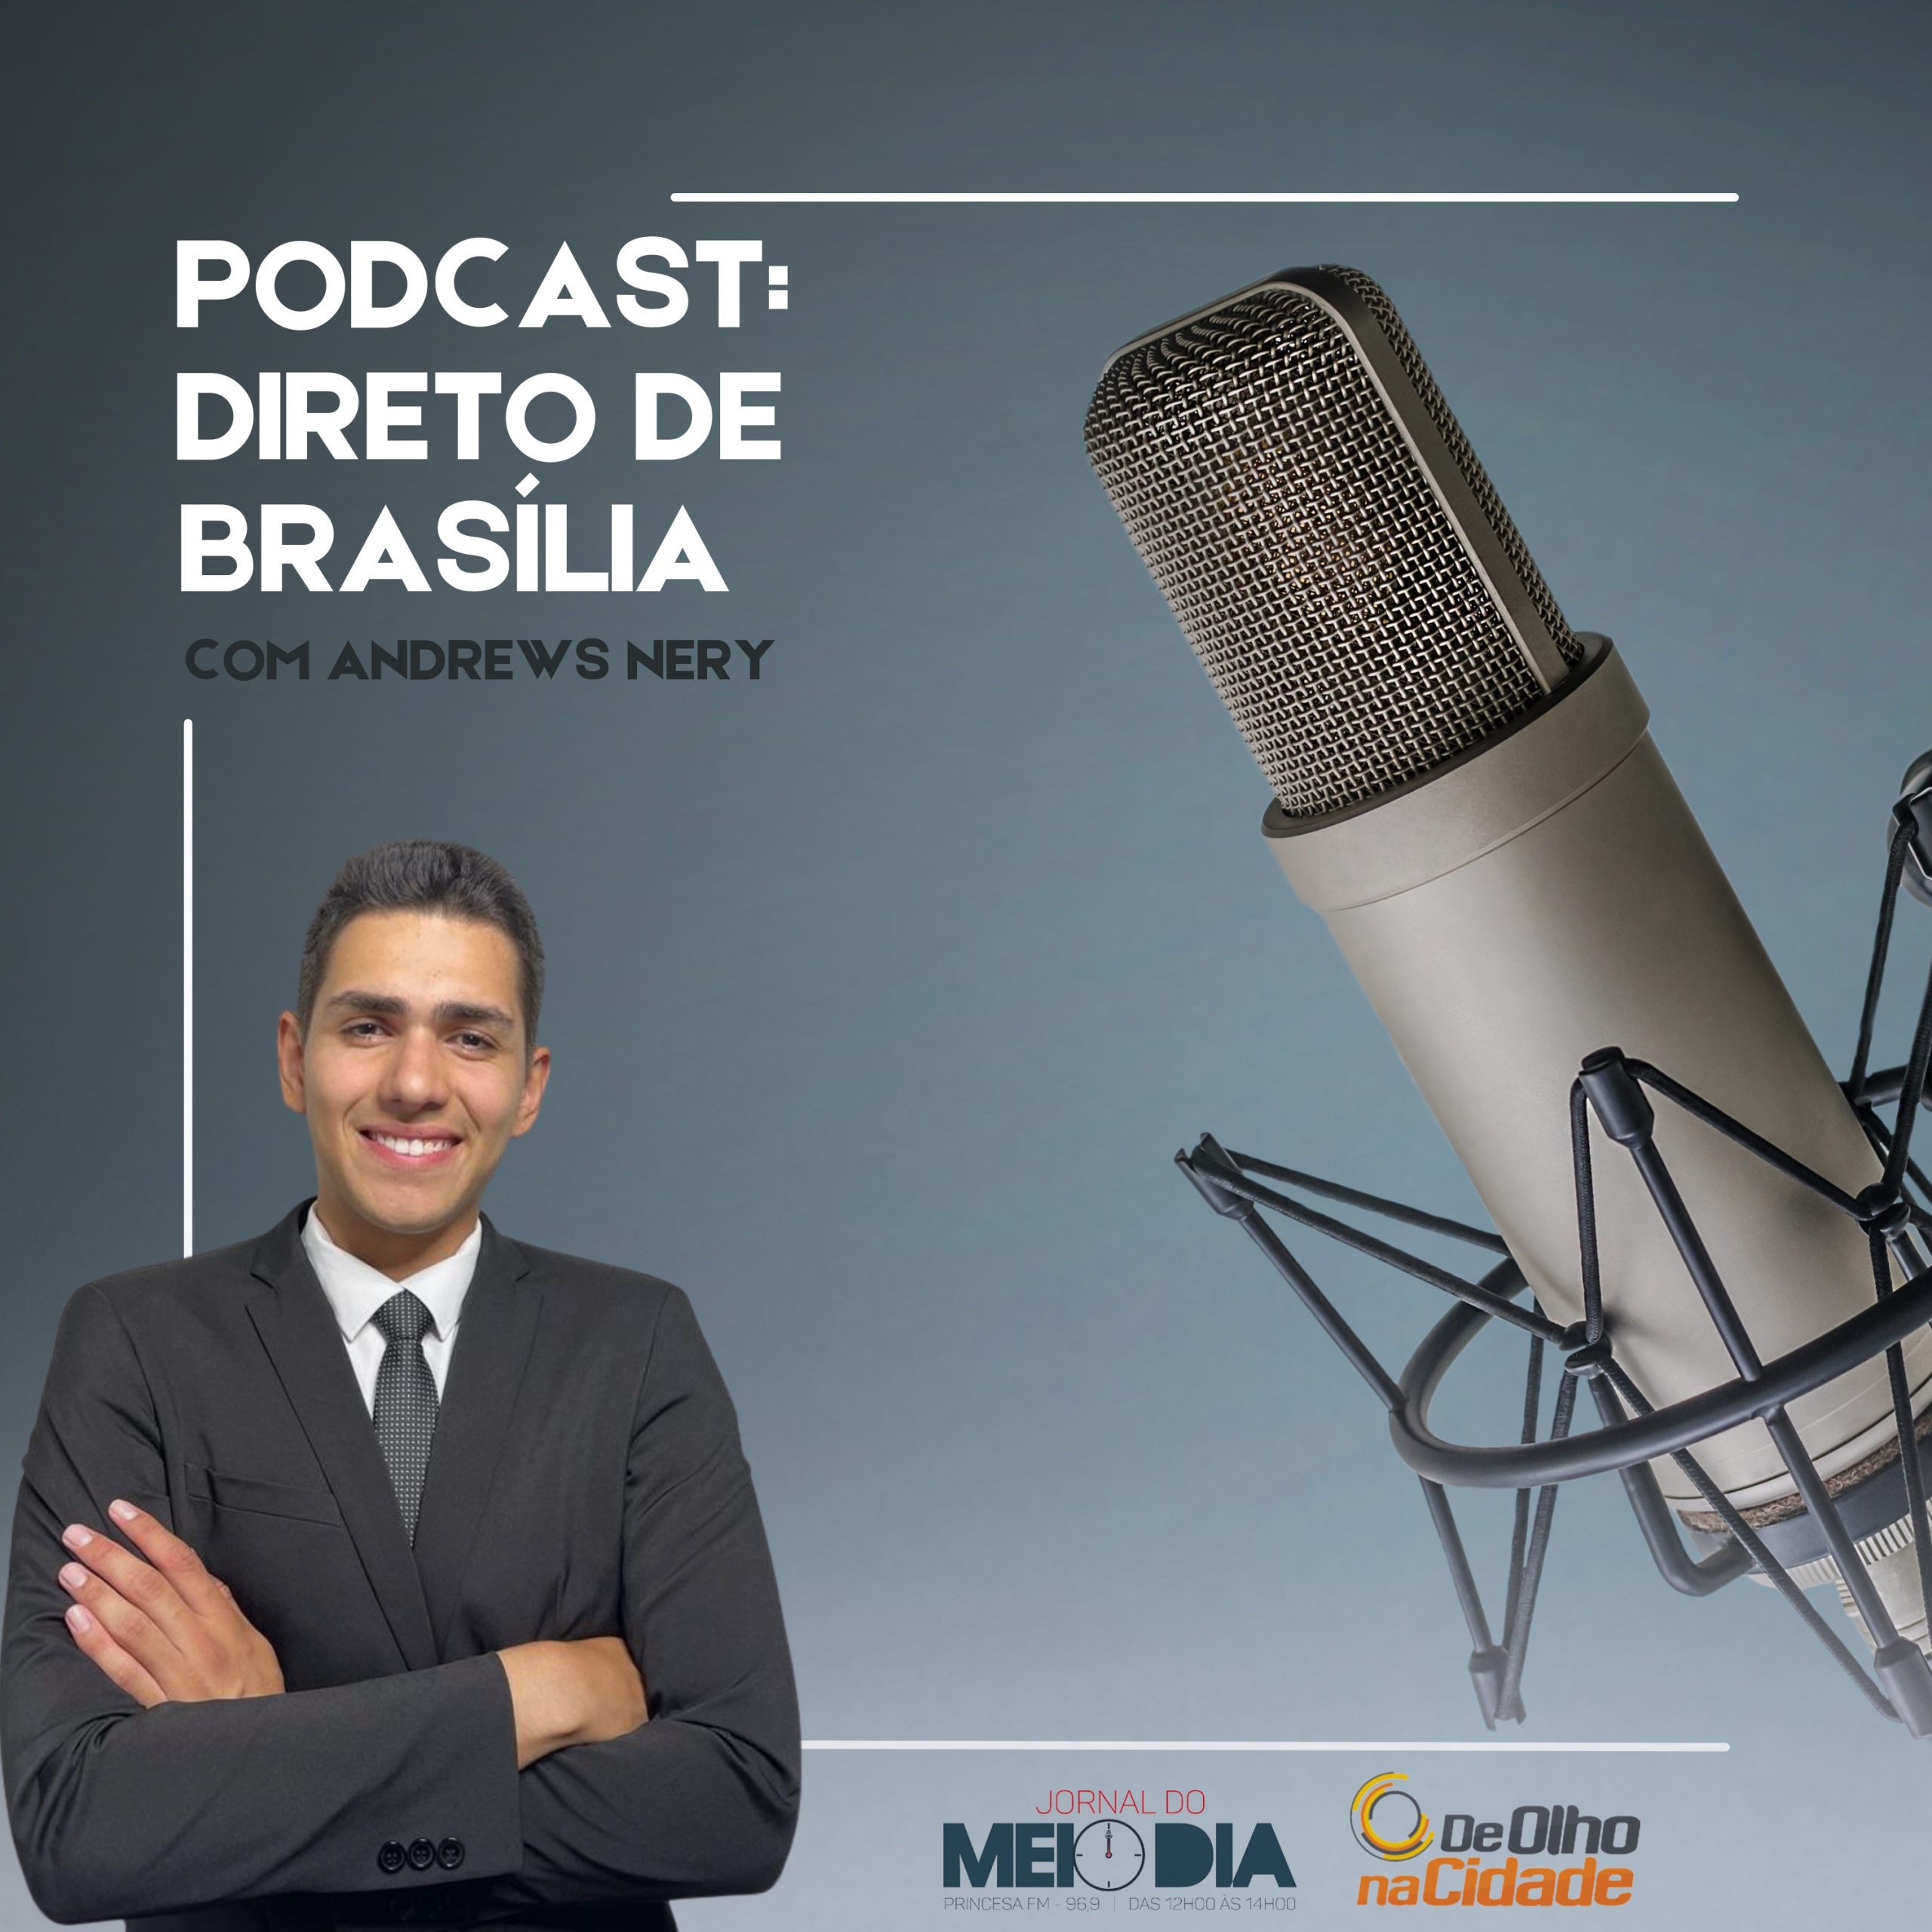 Podcast: Direto de Brasília com Andrews Nery (31/03)